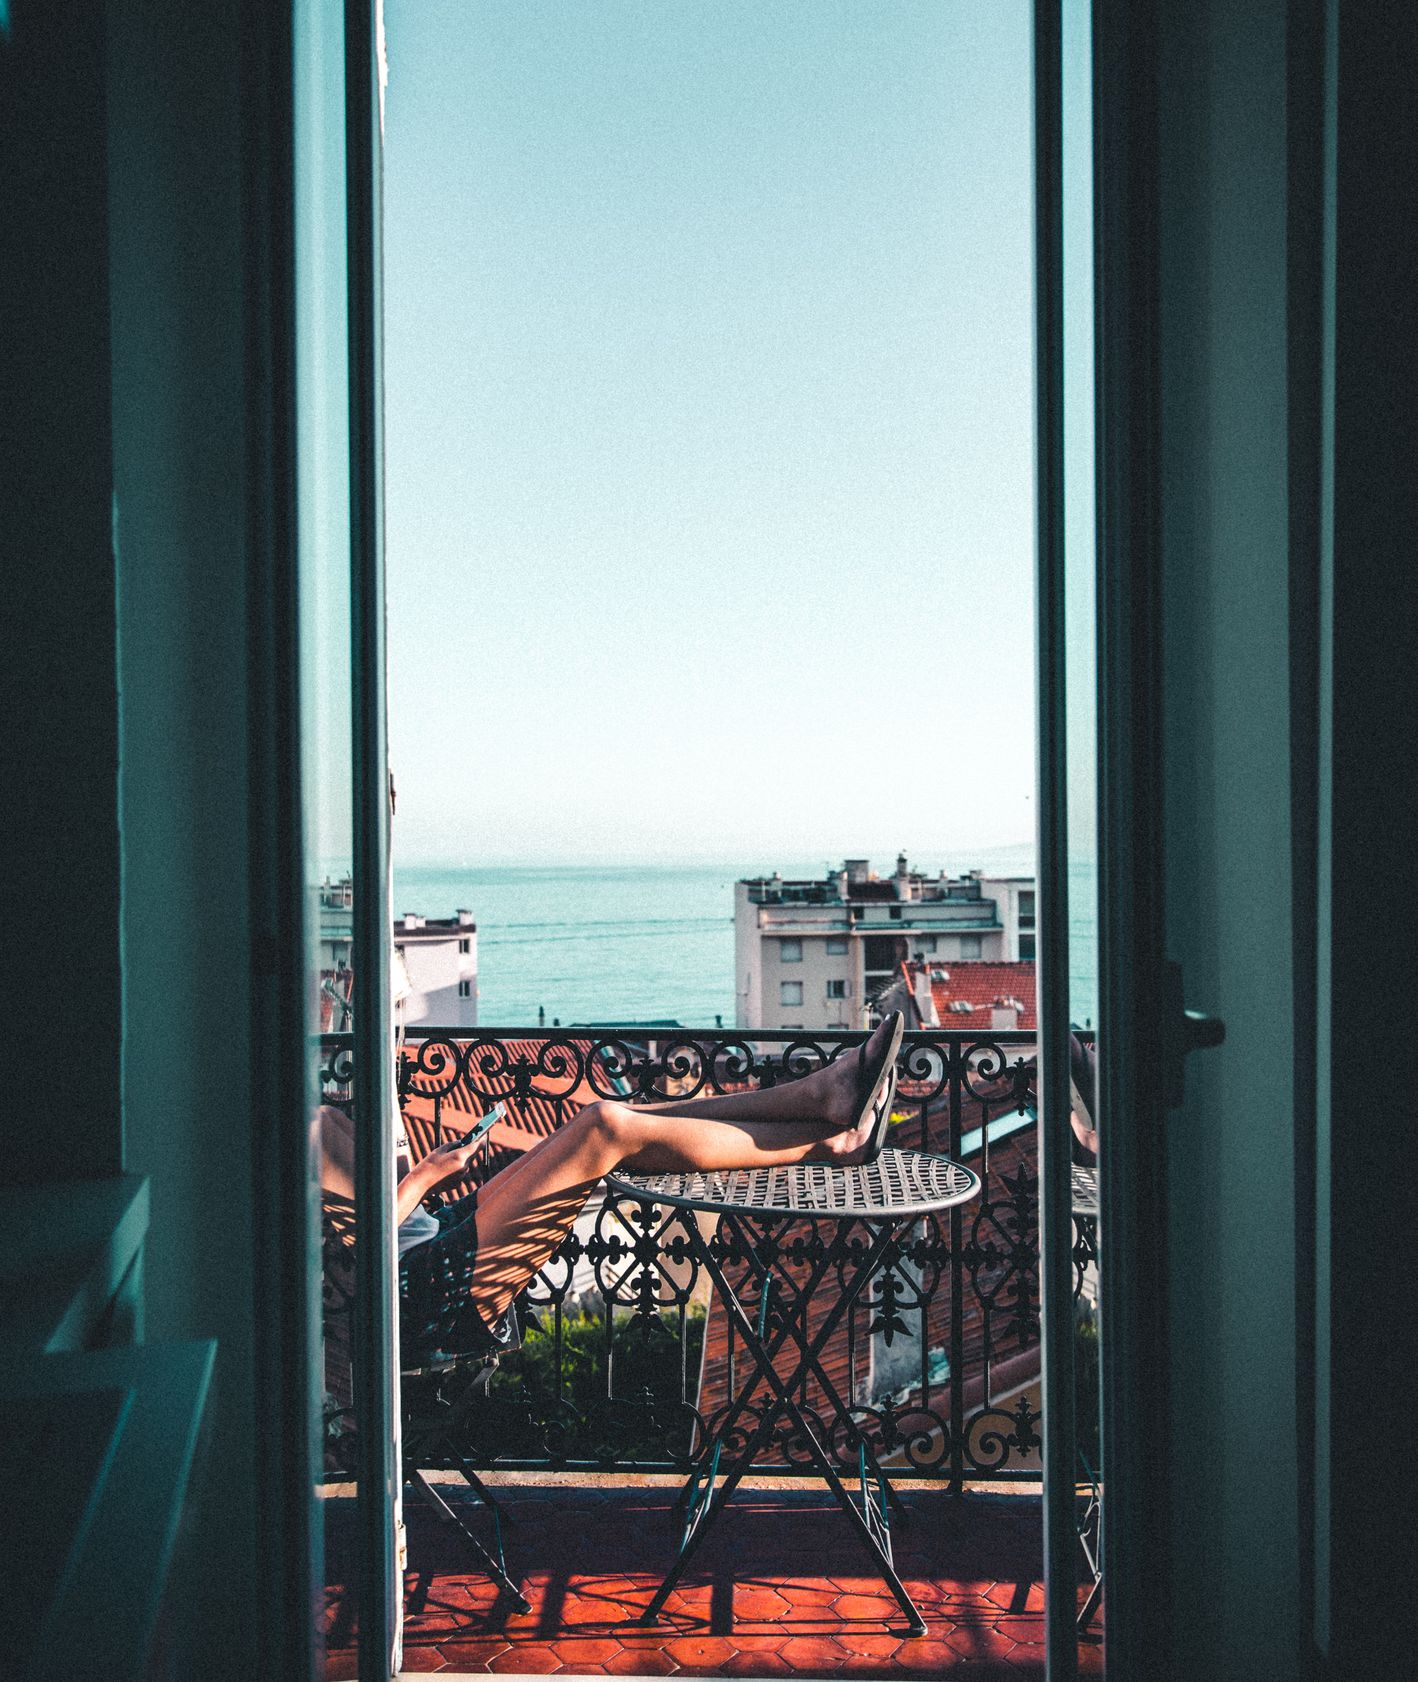 Balkon z widokiem na morze, osoba odpoczywająca na balkonie (fot. Andre Benz)